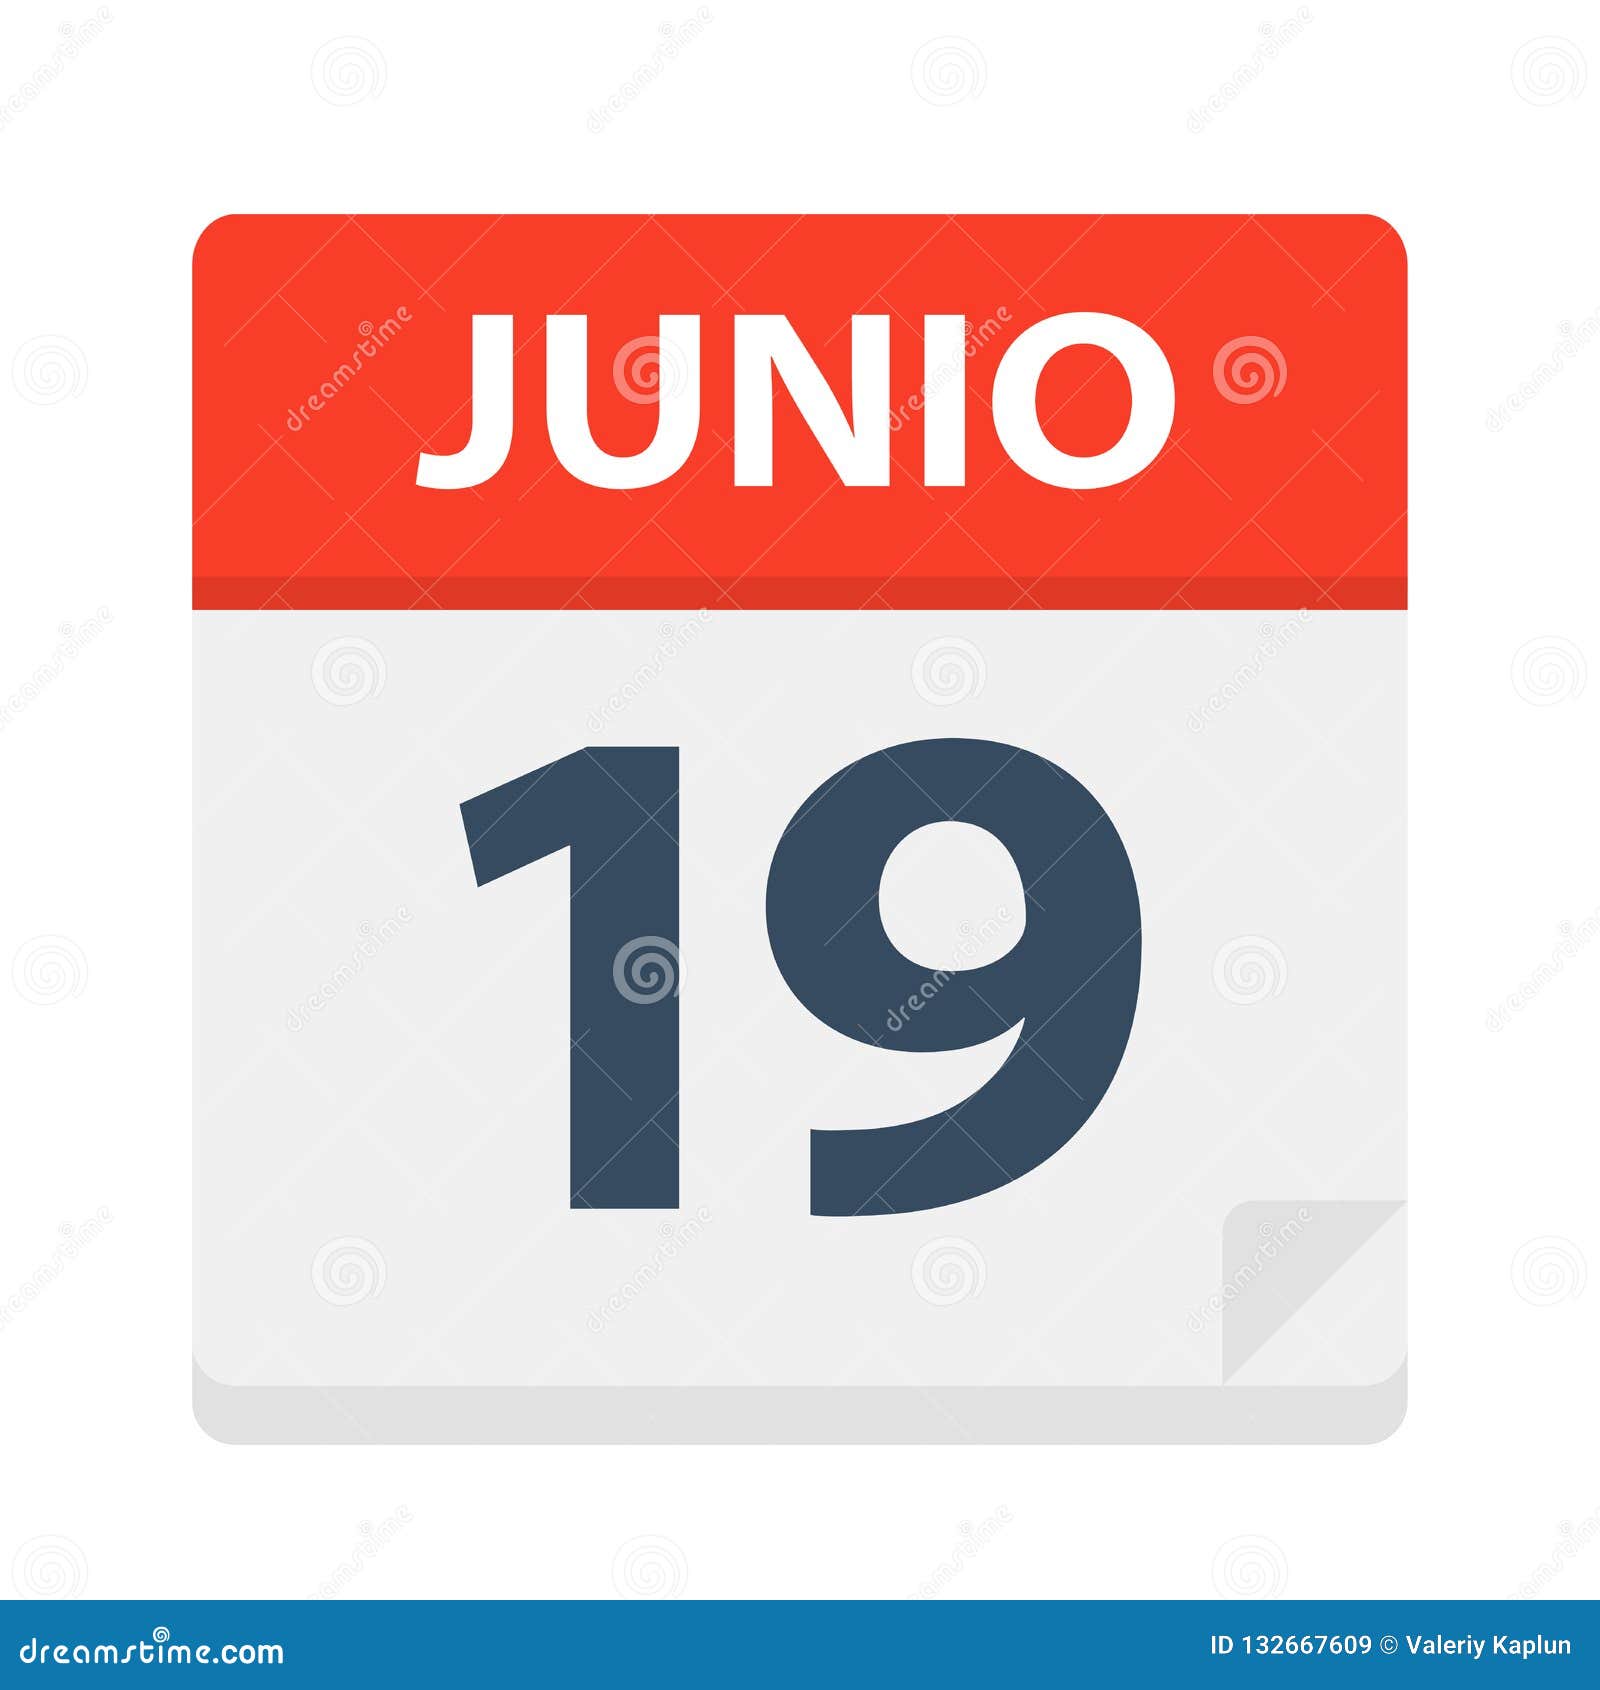 junio 19 - calendar icon - june 19.   of spanish calendar leaf